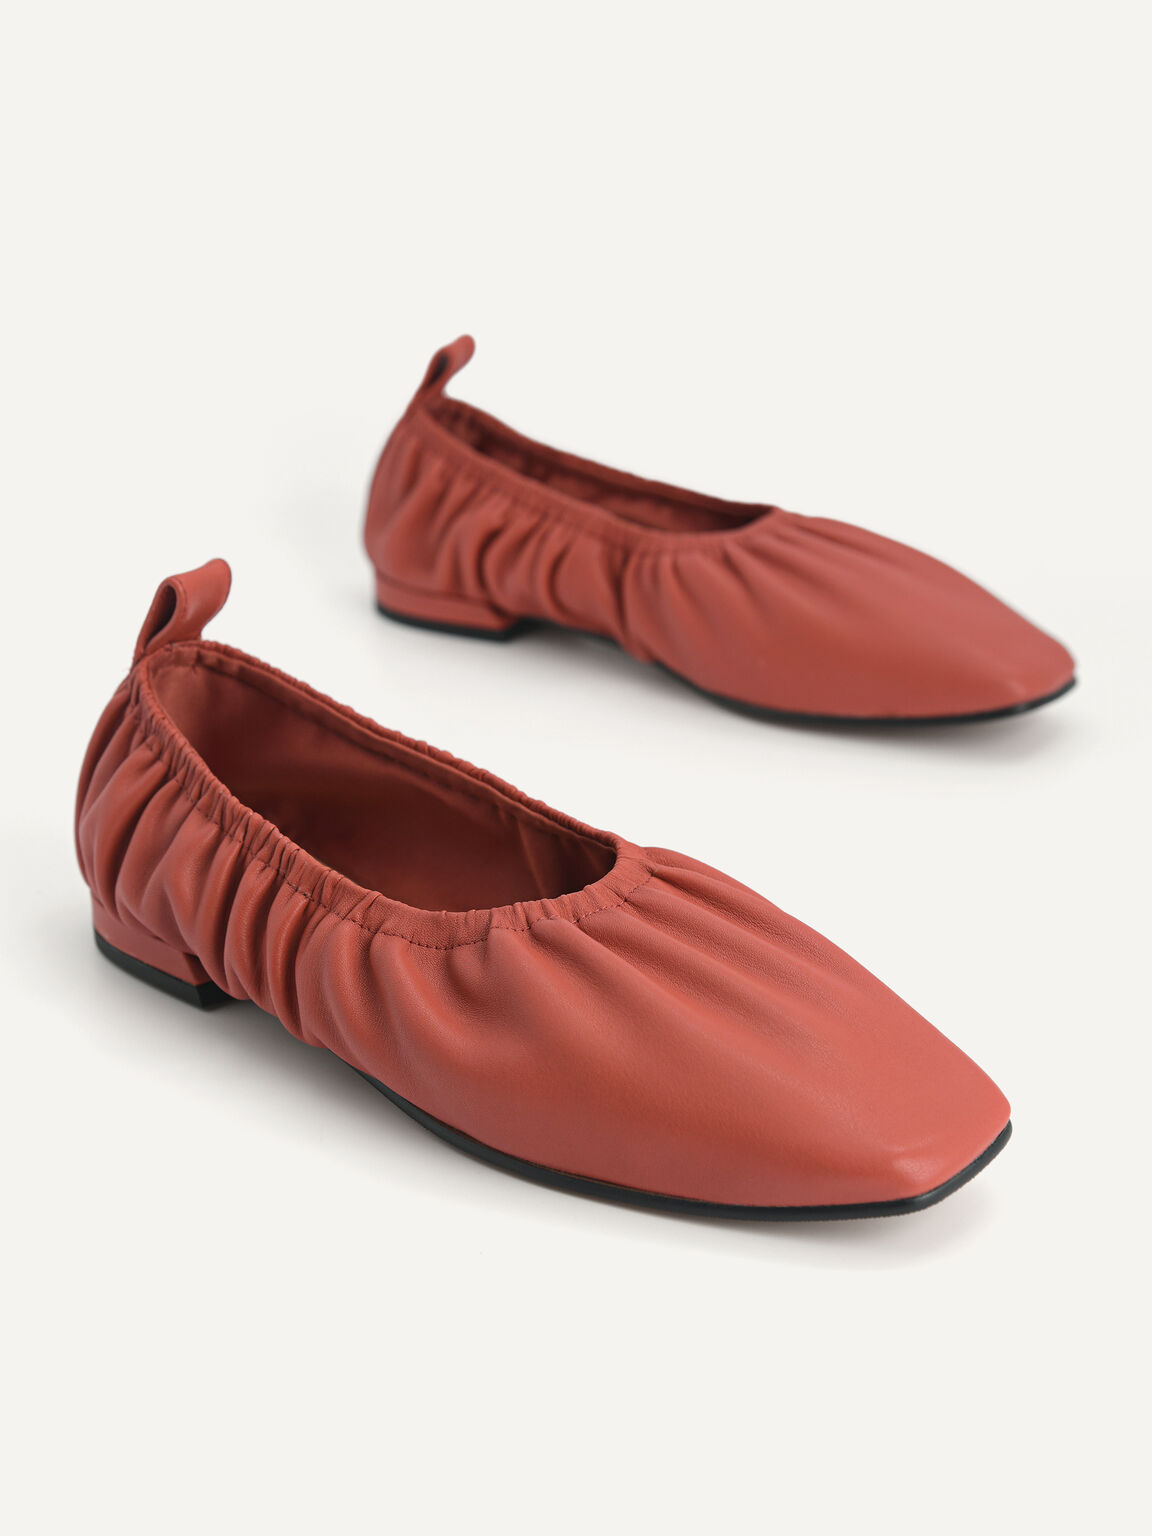 褶邊牛皮平底鞋, 砖红色, hi-res